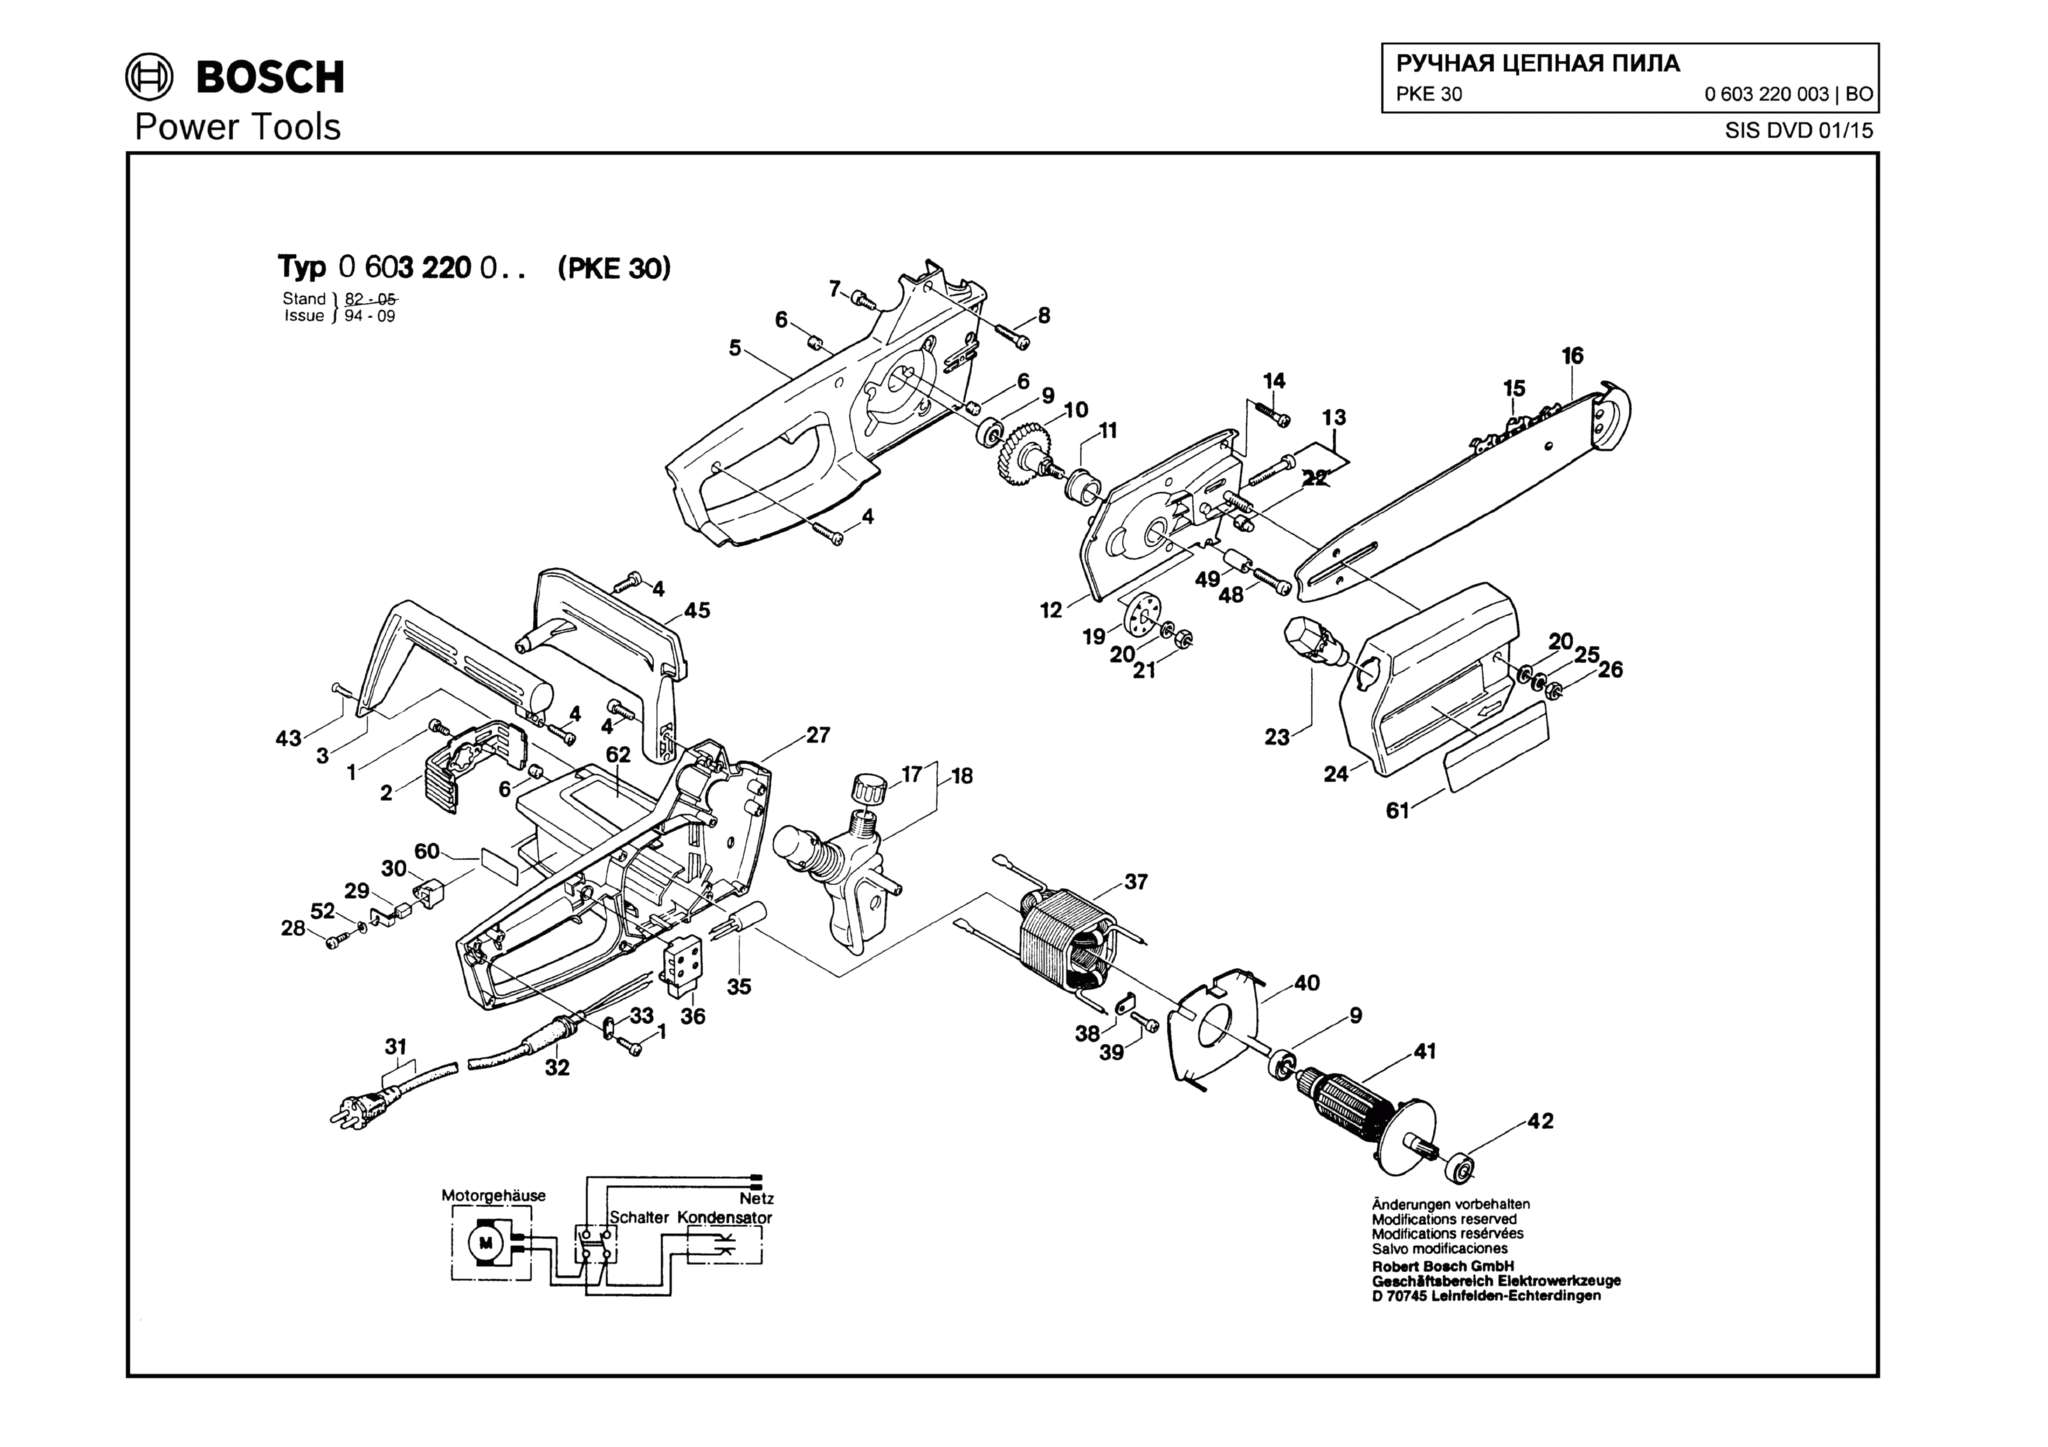 Запчасти, схема и деталировка Bosch PKE 30 (ТИП 0603220003)